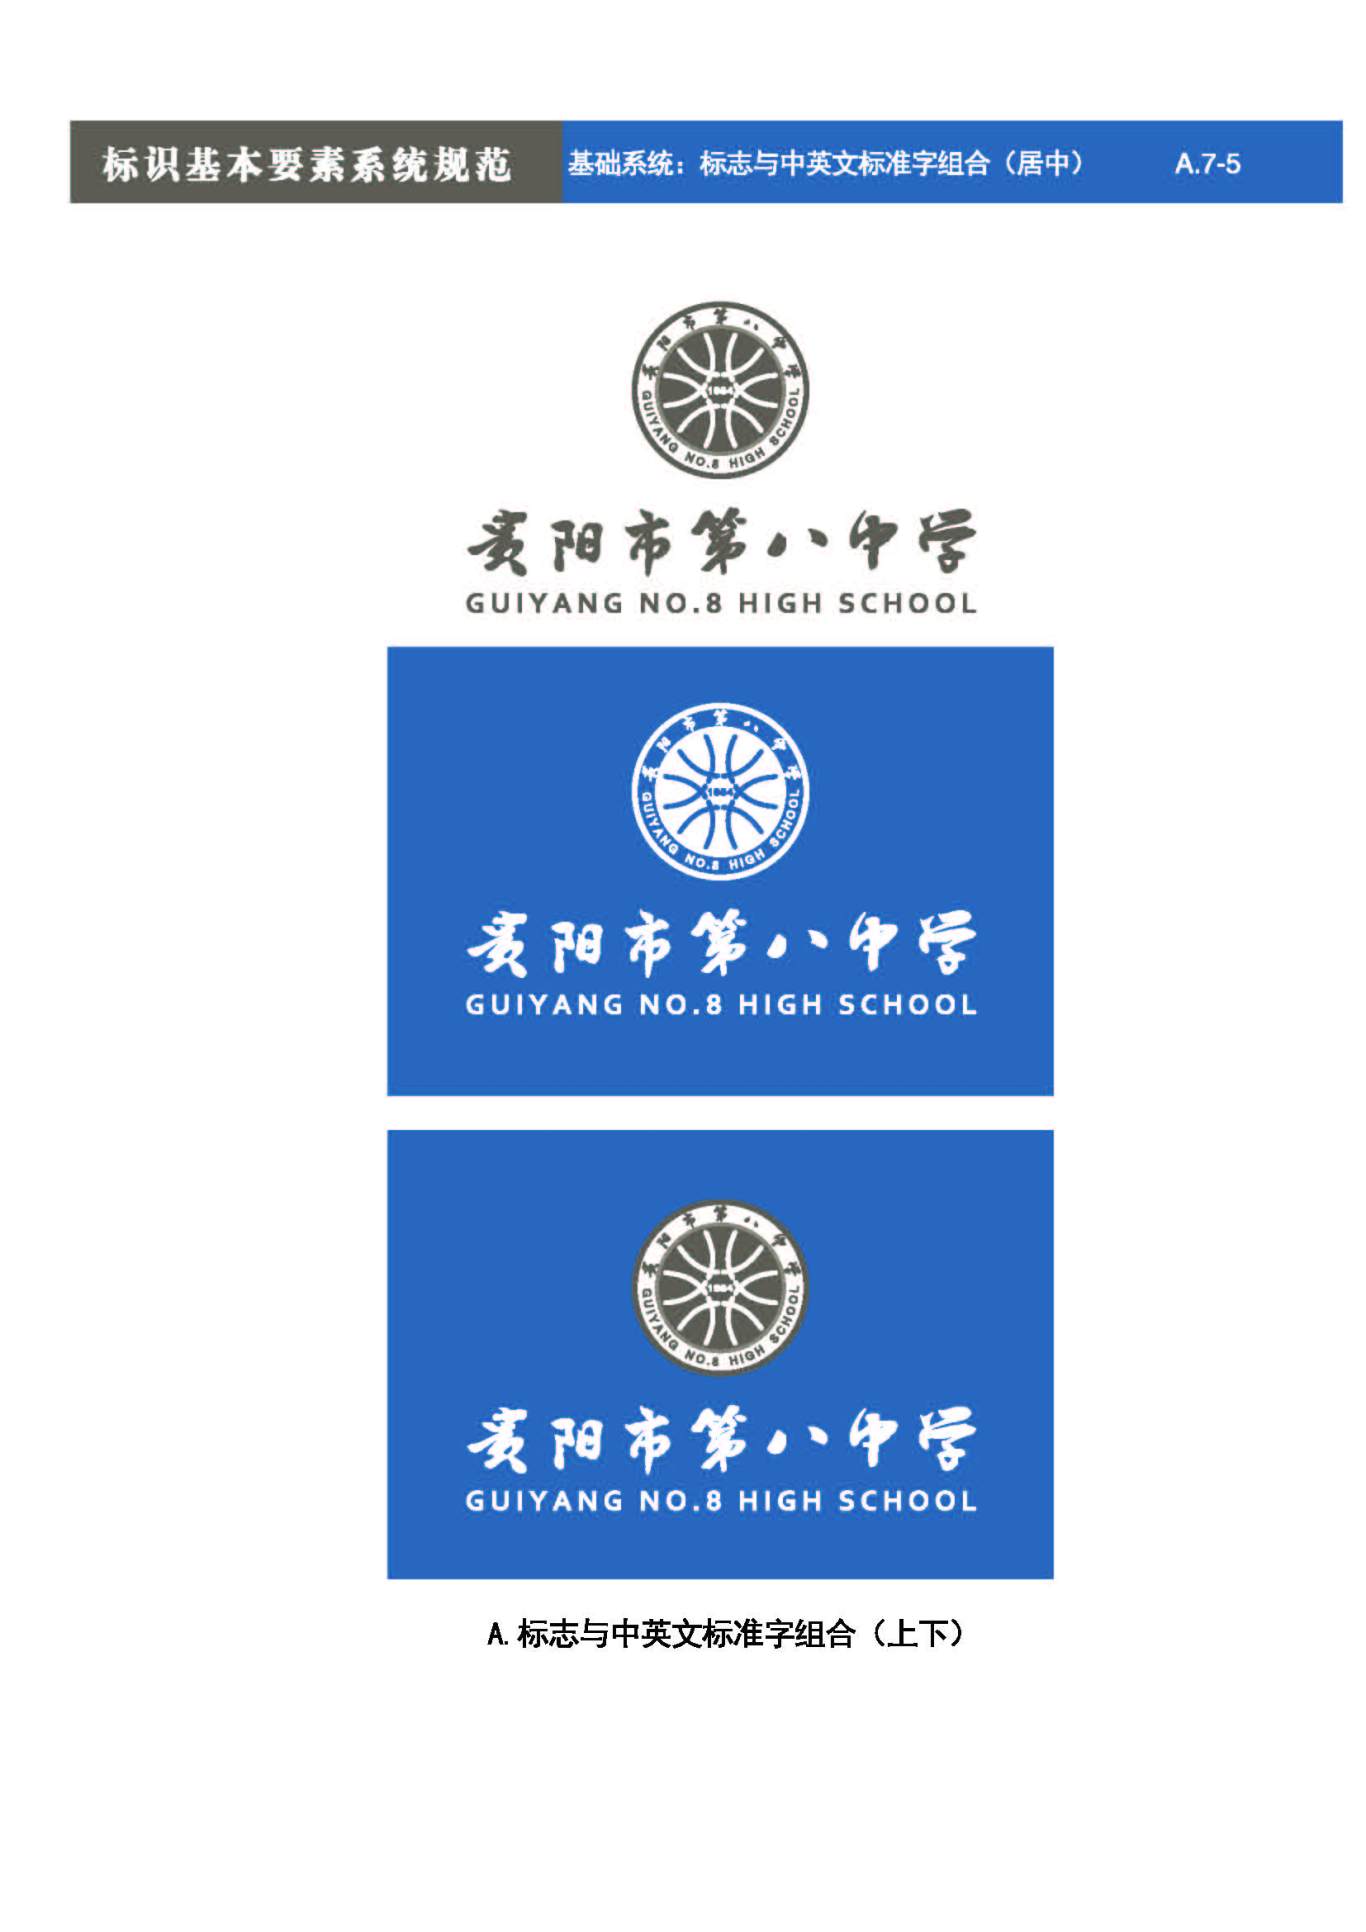 贵阳第八中学Logo、VIS设计图26